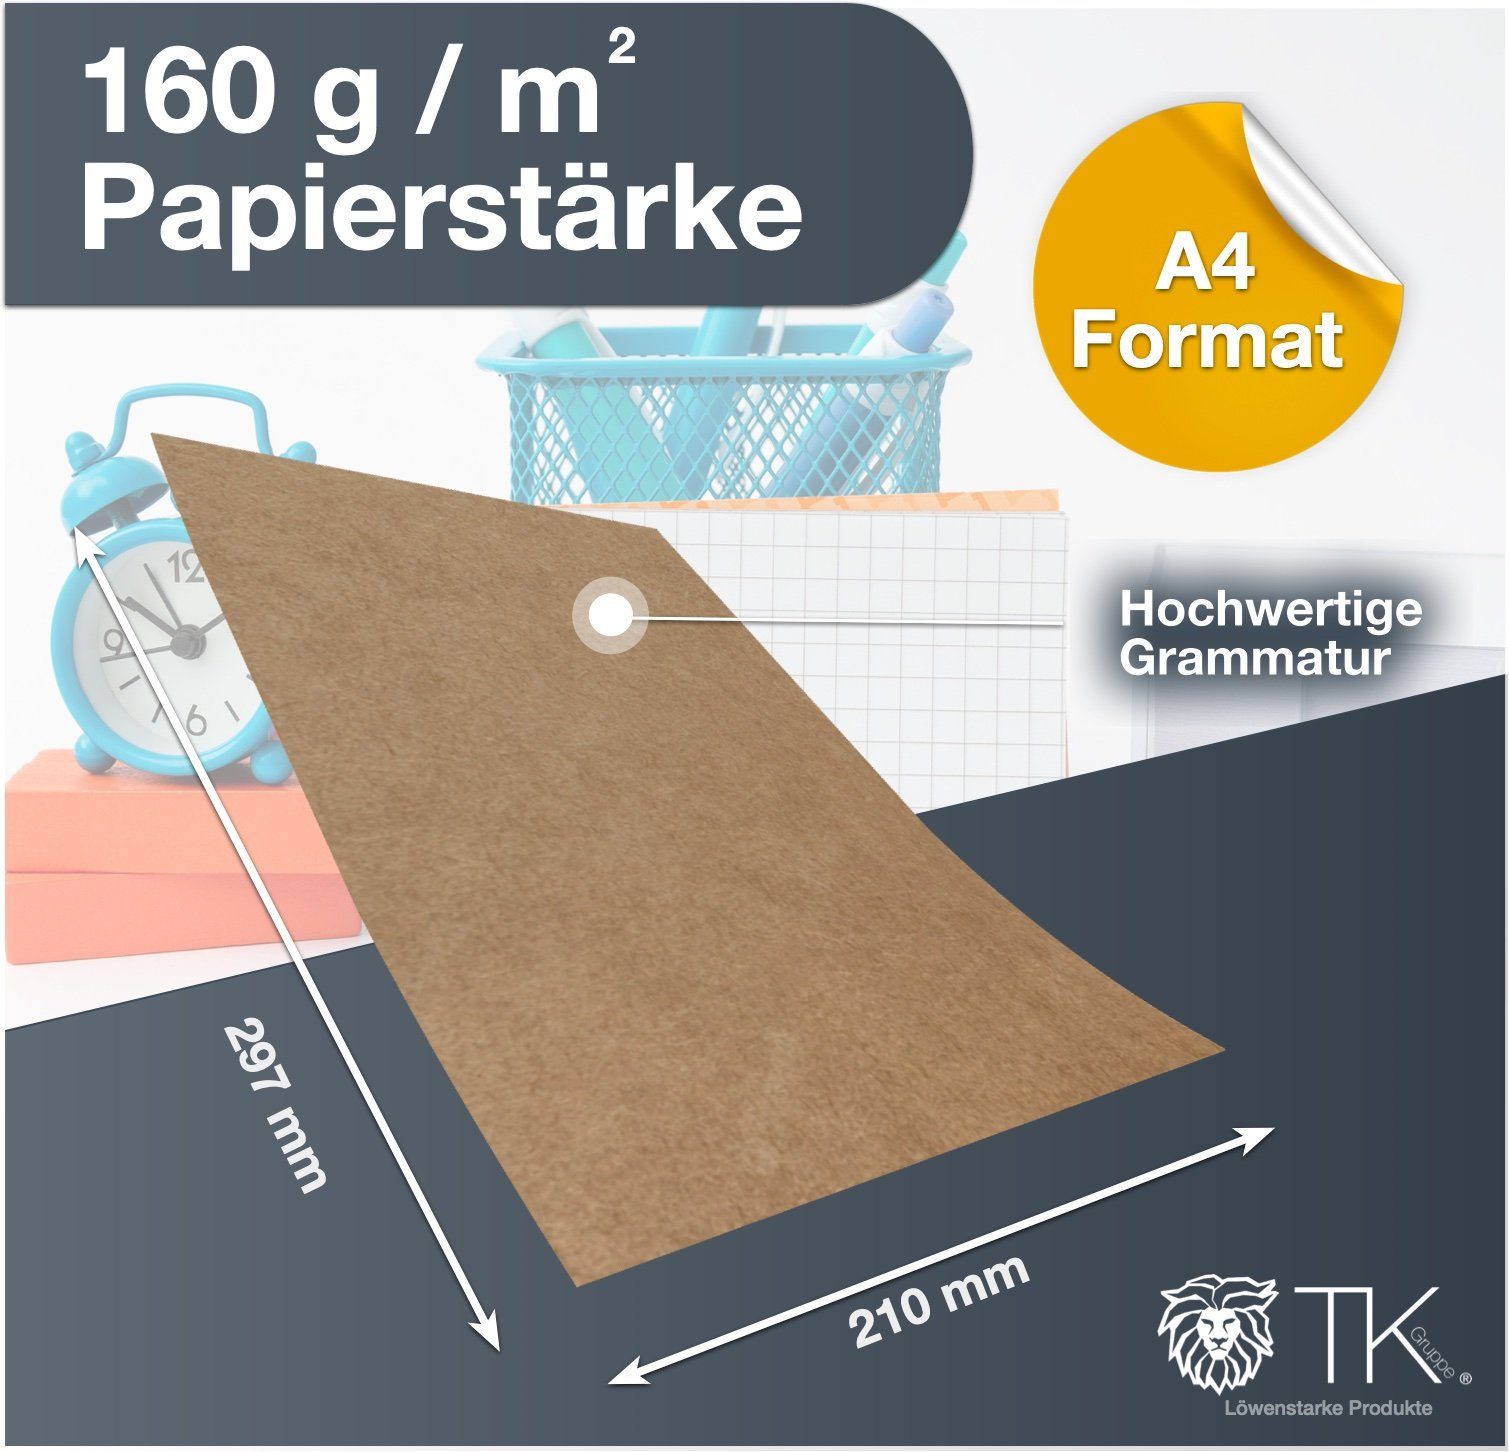 Papier 100x DIN Bastelfreund® braun Naturkarton Kraftpapier aus Kraftpapier A4